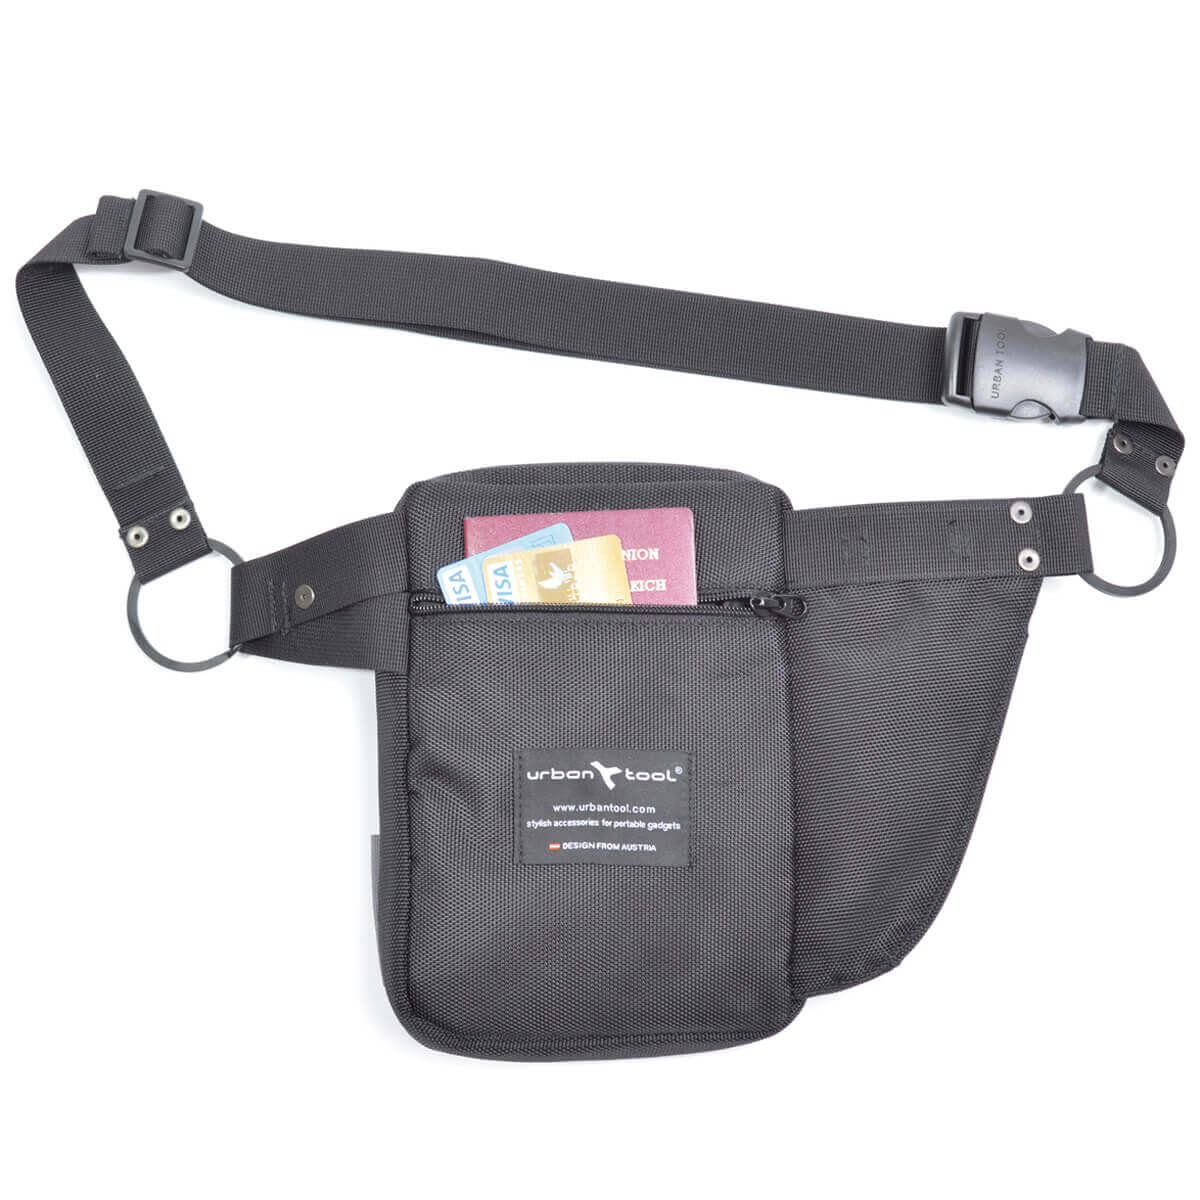 Contour overhandigen afdeling Waist holster bag for tablet and smartphones URBAN TOOL ® caseholster